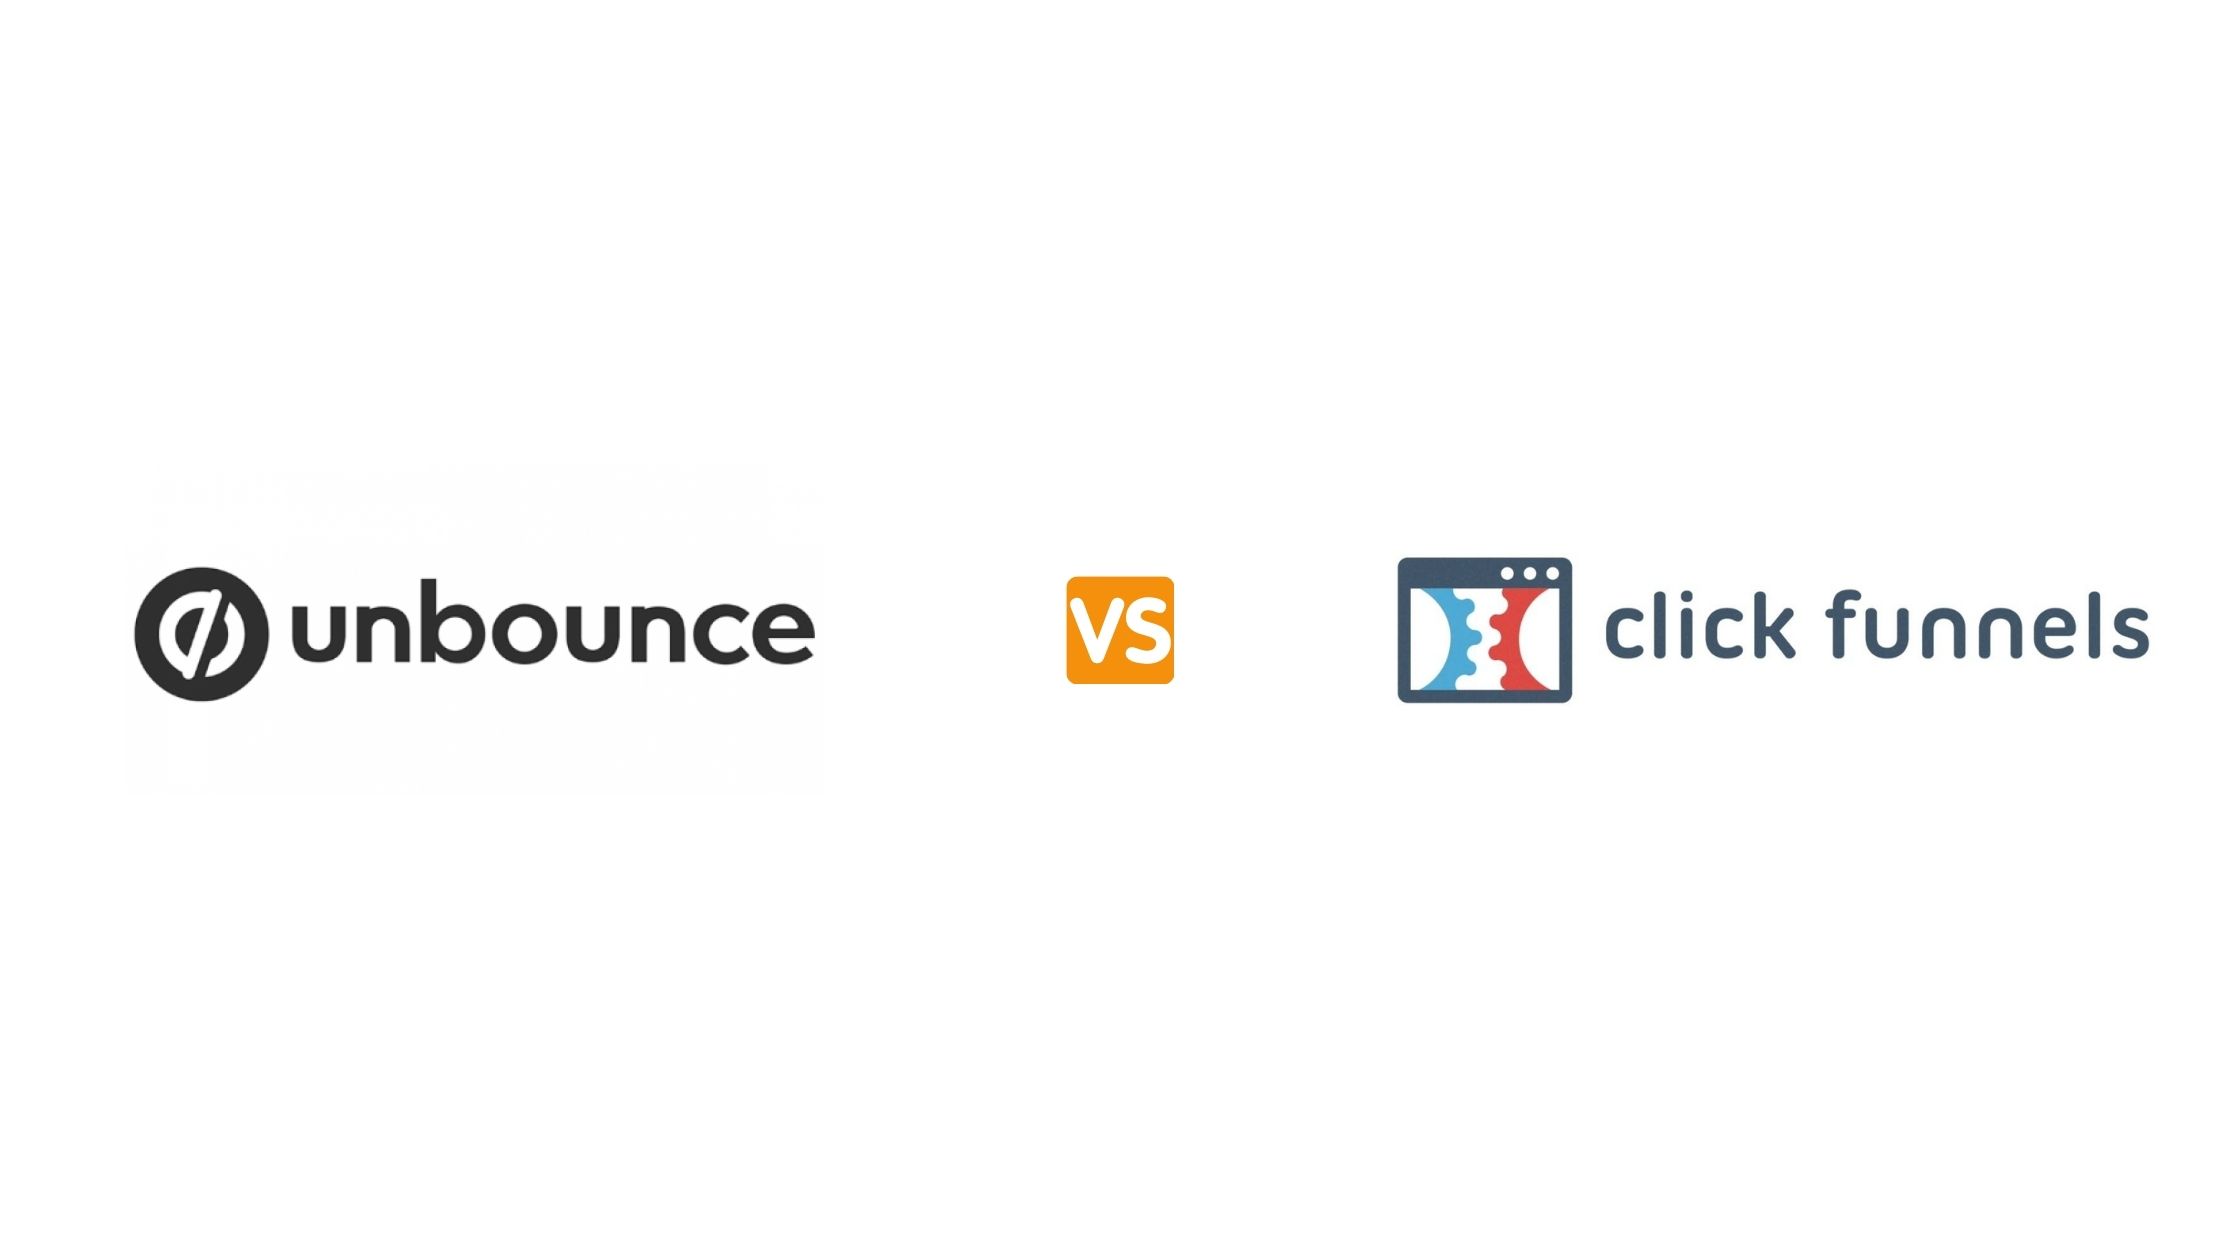 Unbounce vs Clickfunnels